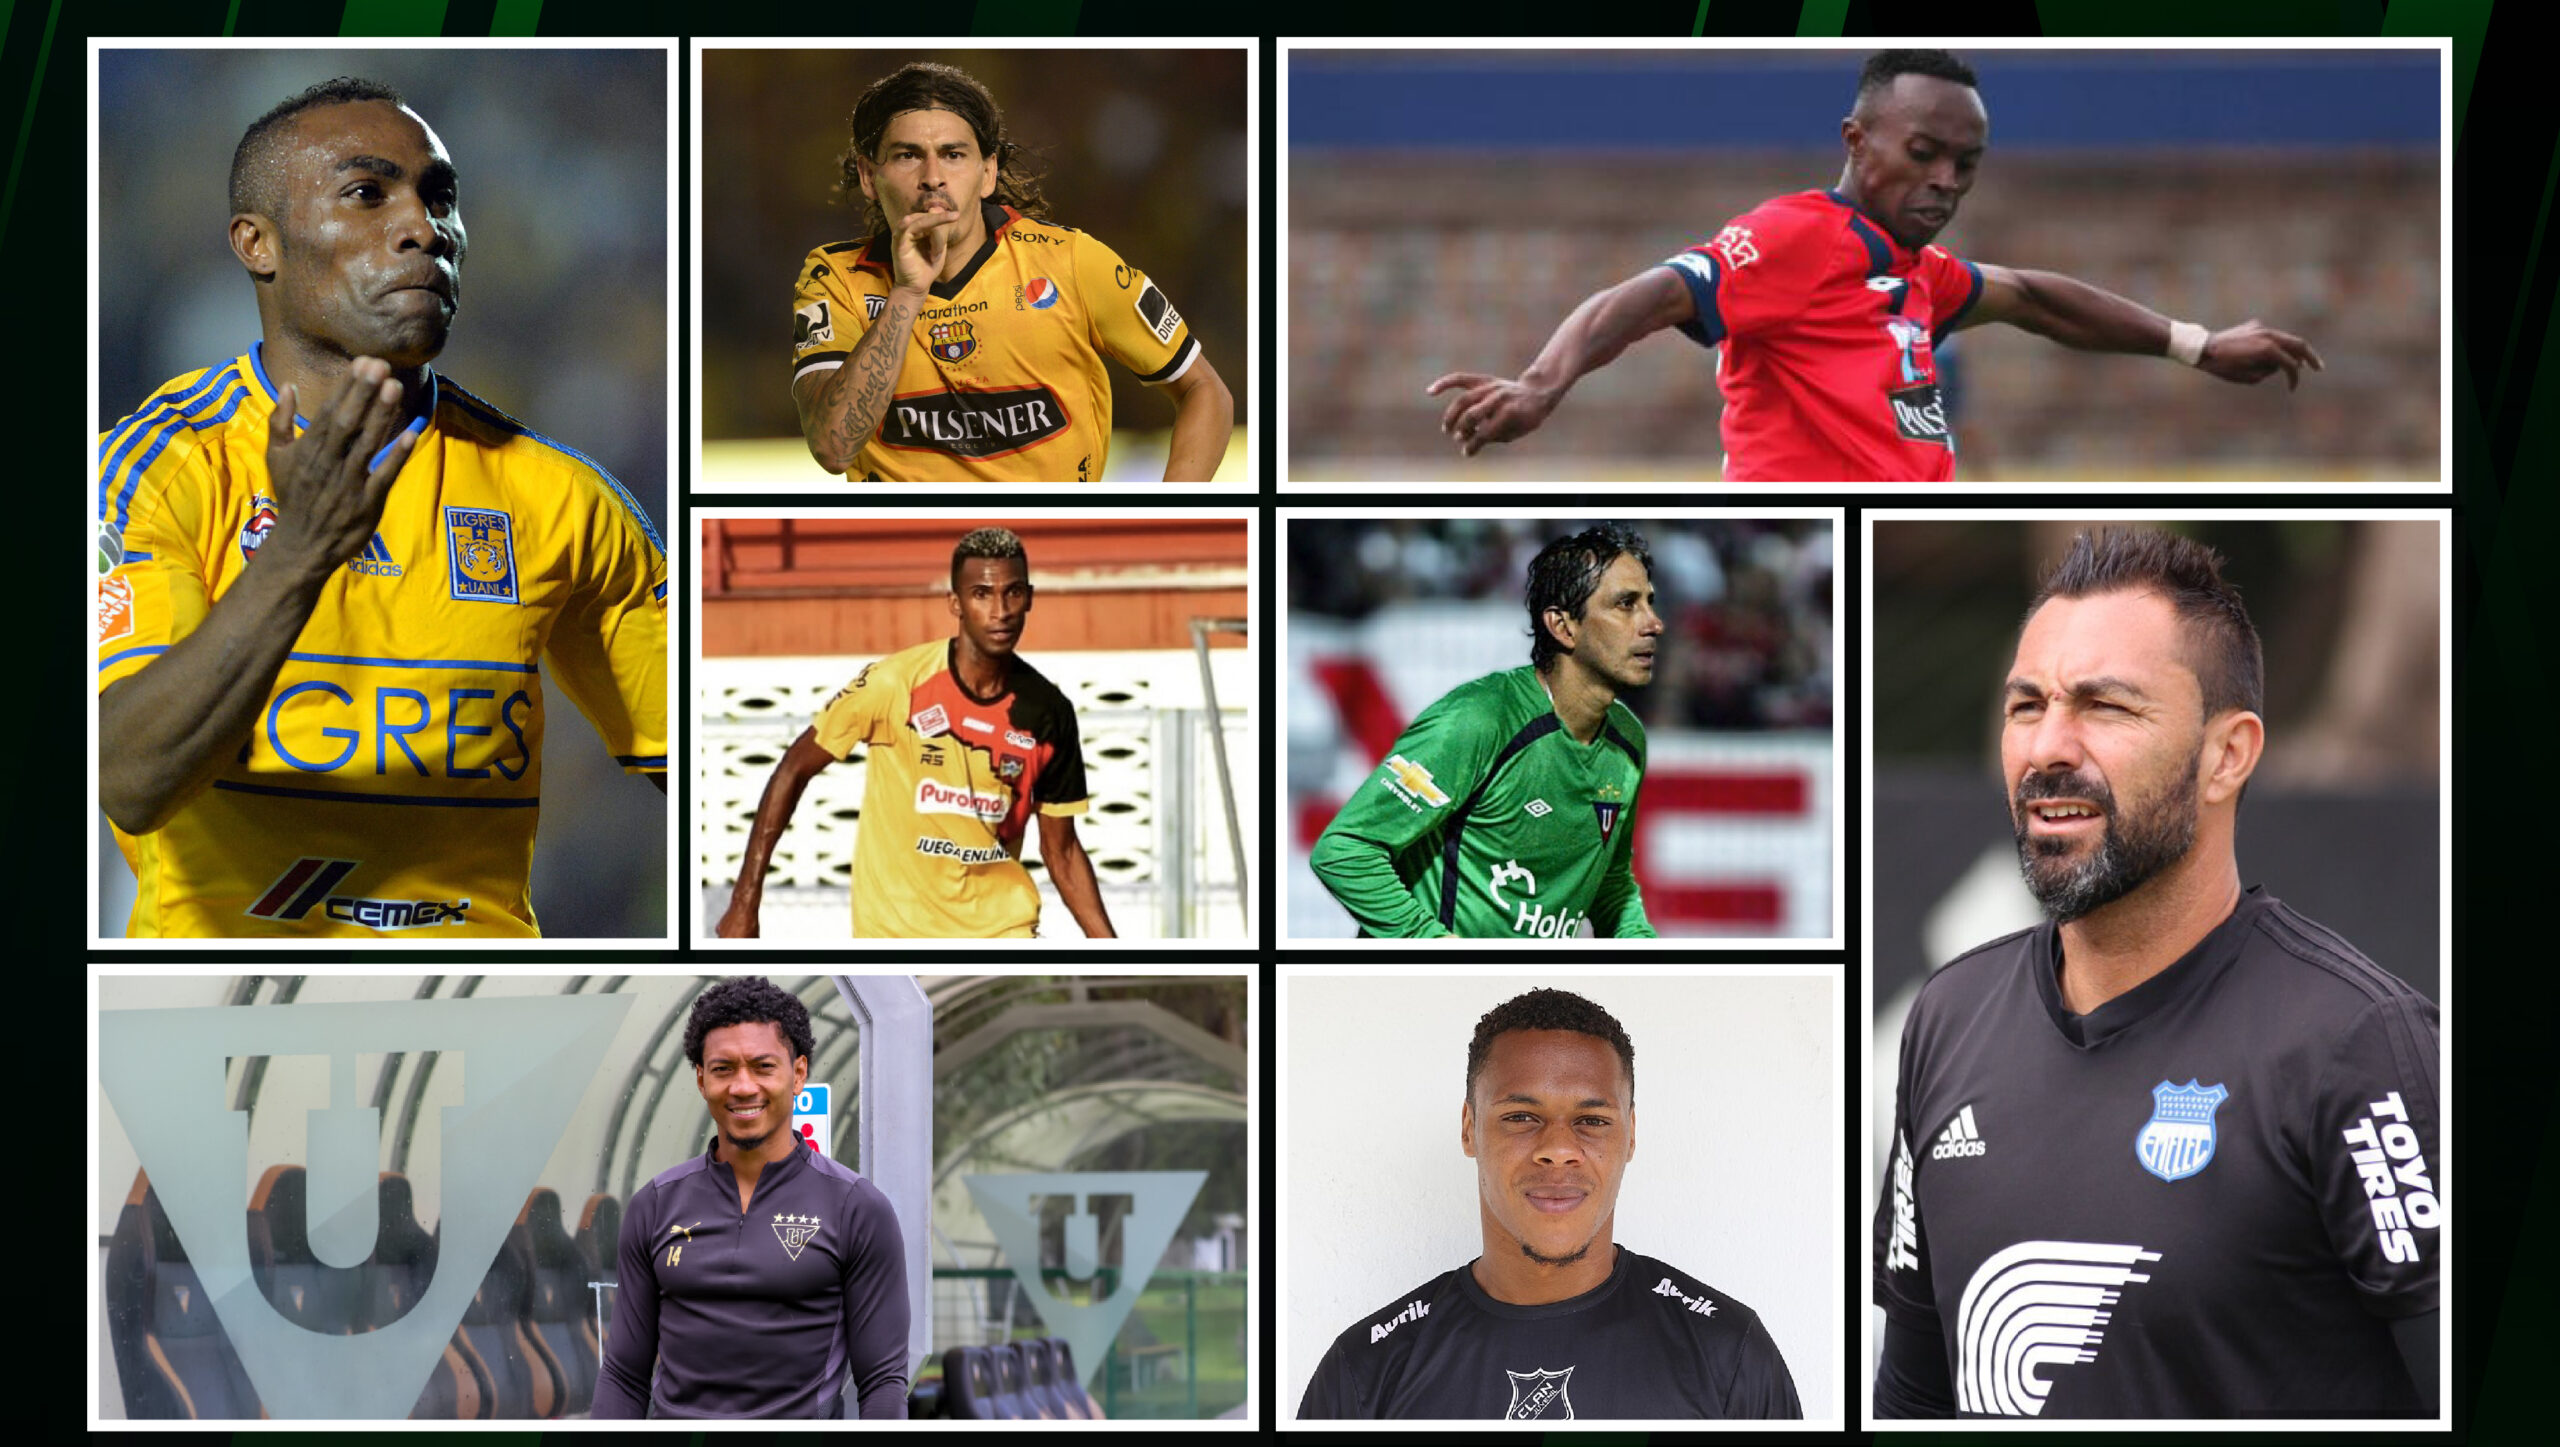 Jugadores del fútbol ecuatoriano que han sido reconocidos por sus apodos.